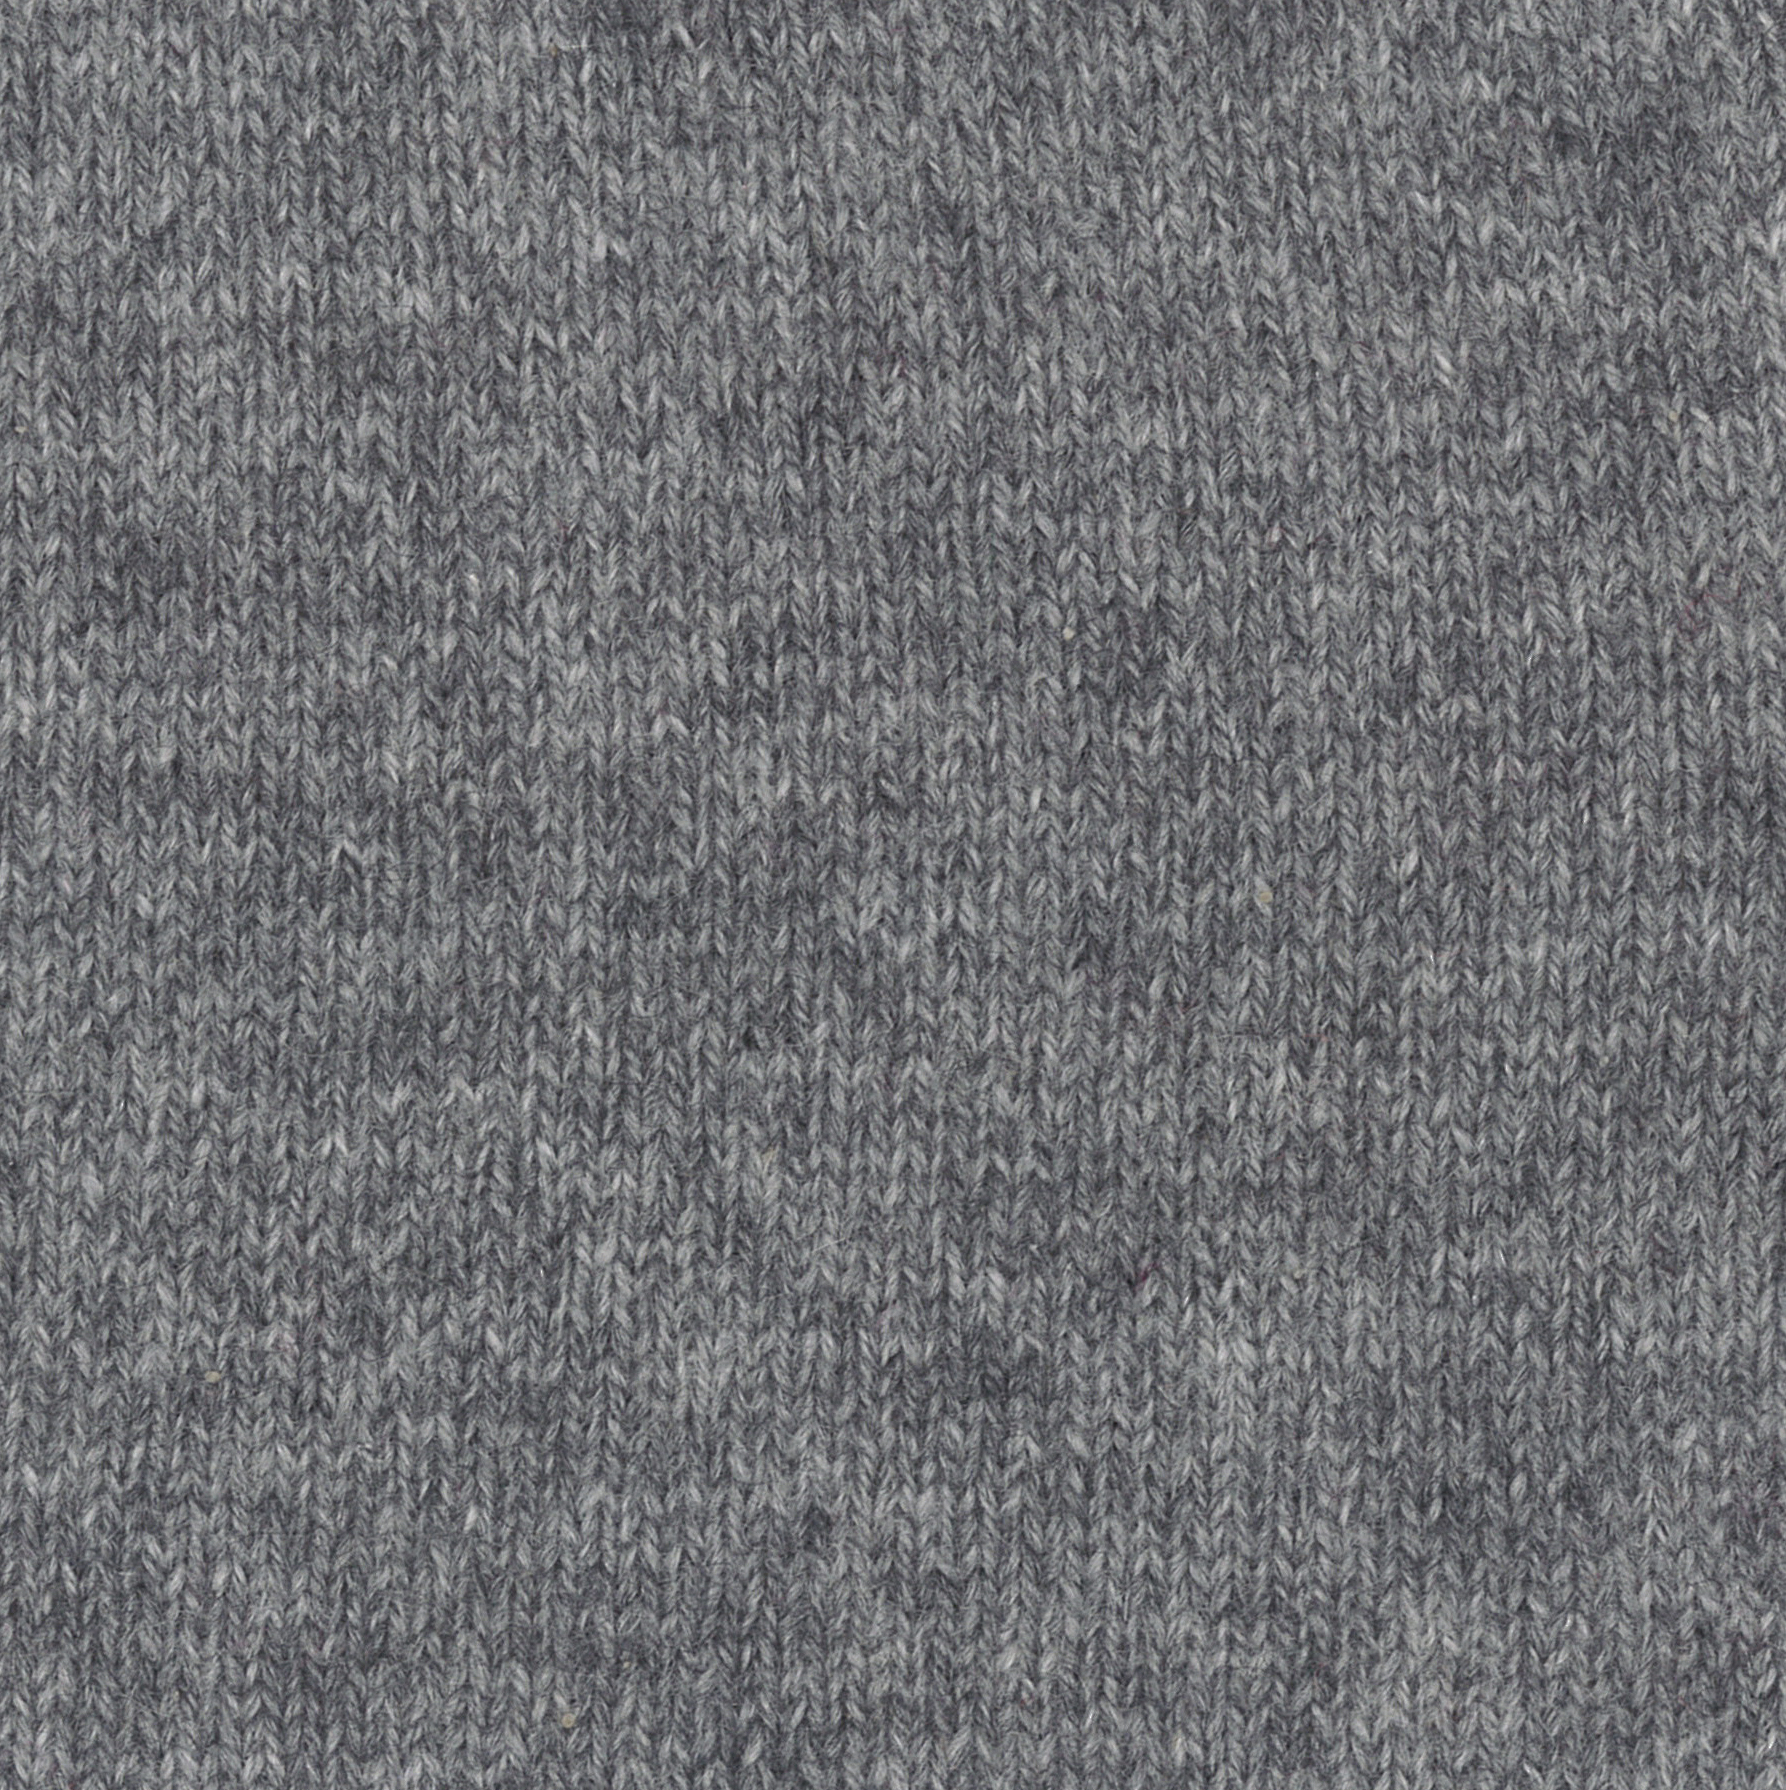 Flannel grey